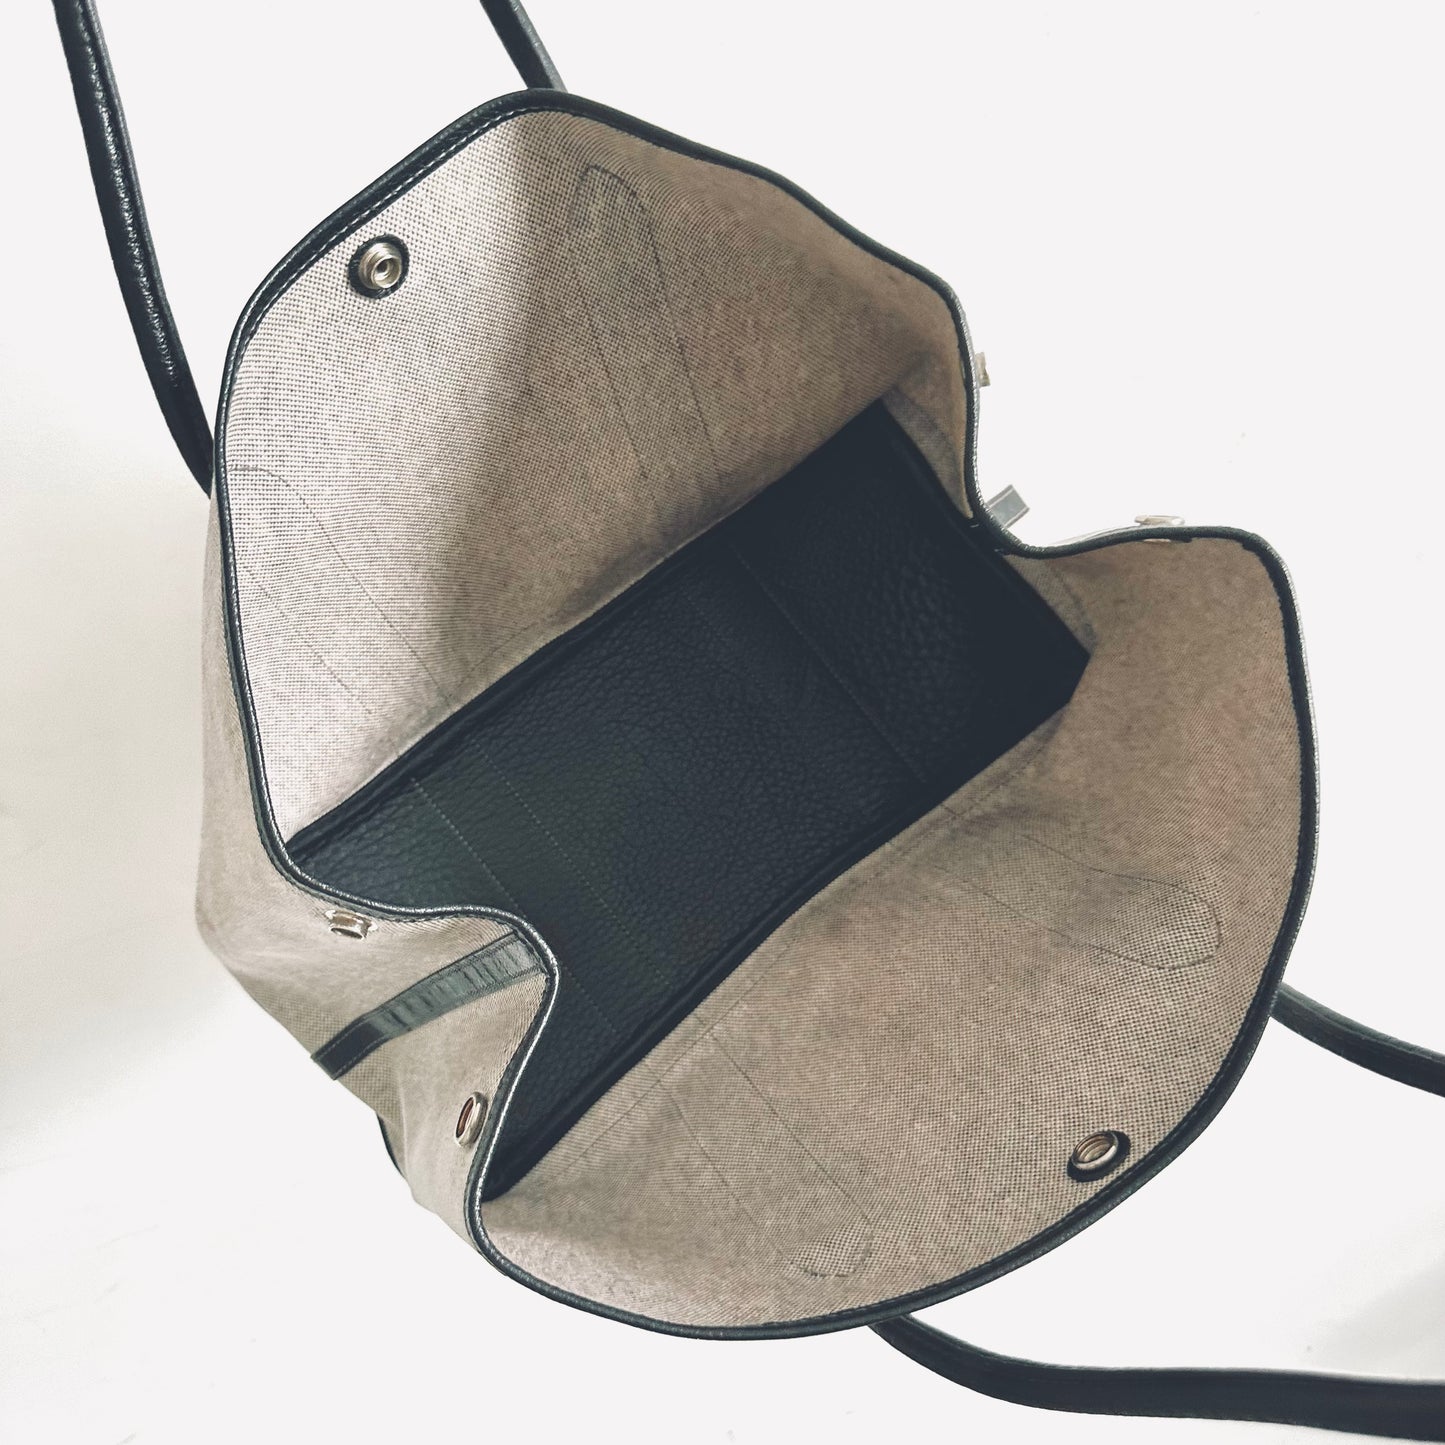 Hermes Ash / Black Garden Party 36 GP36 PM In Toile / Negonda Leather Shoulder Shopper Tote Bag